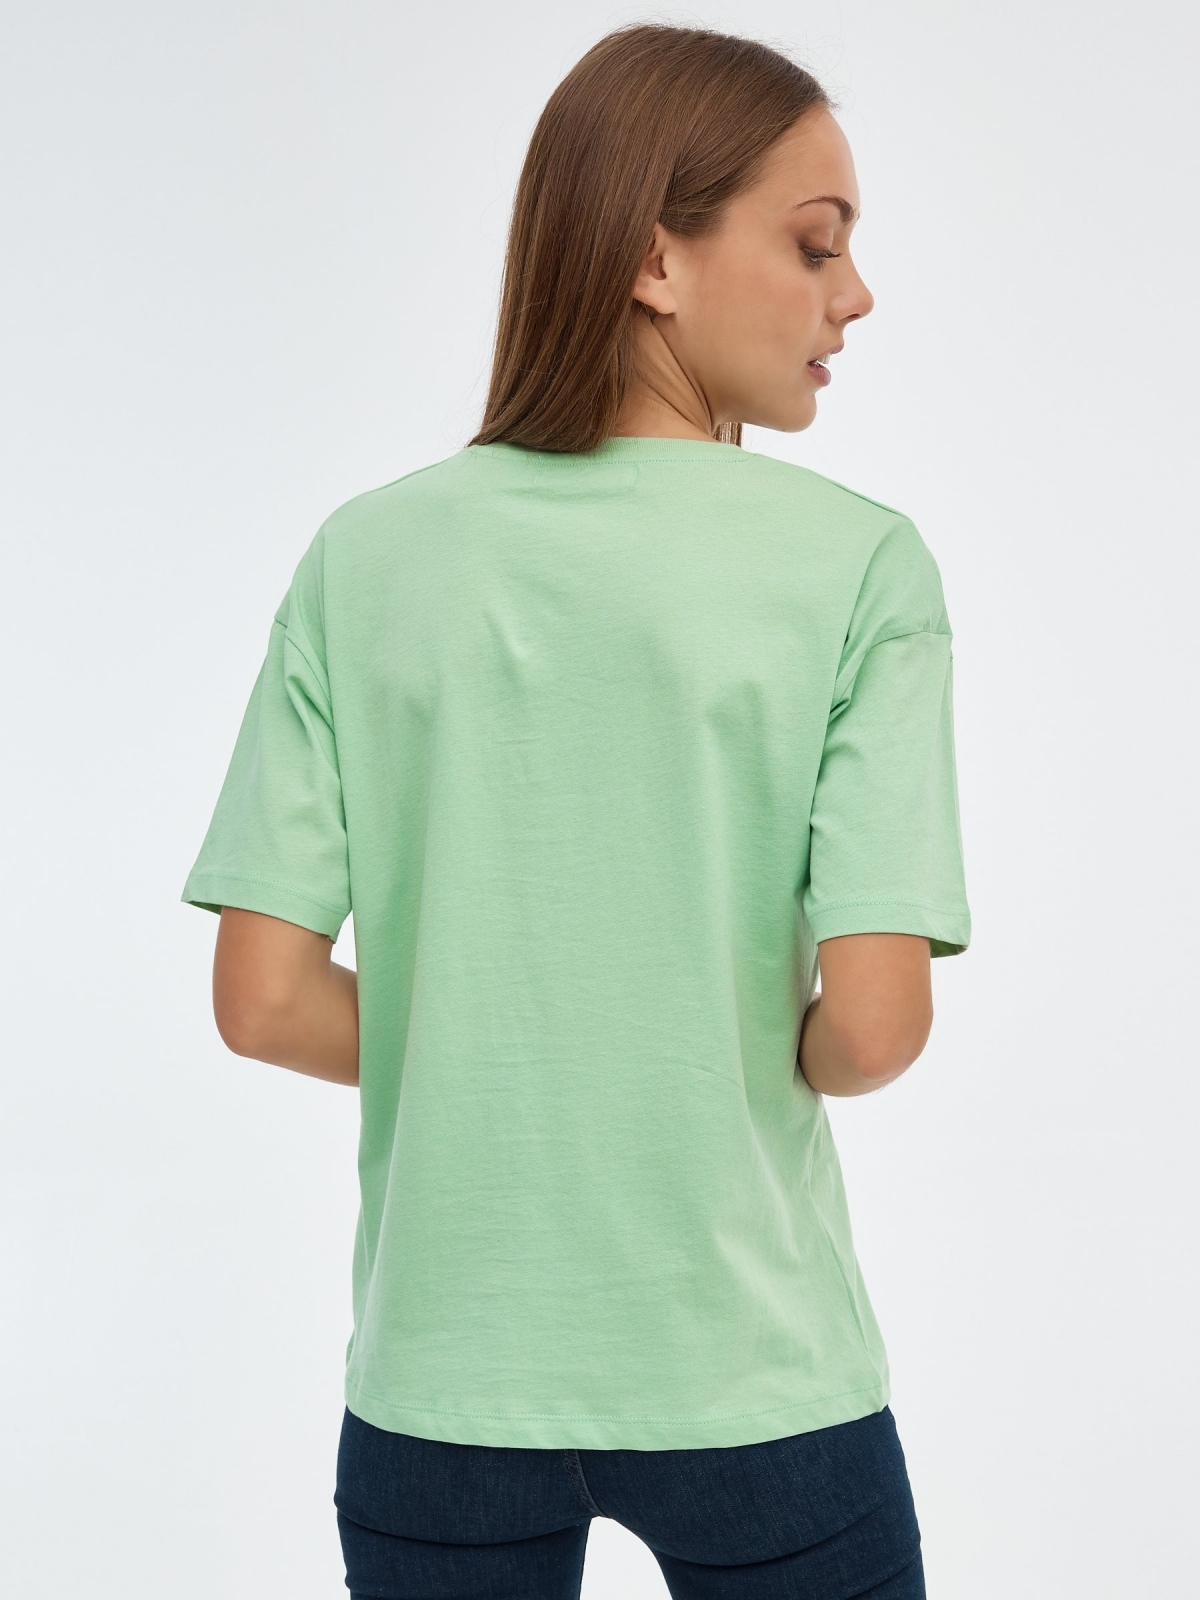 T-shirt de Monterey verde claro vista meia traseira